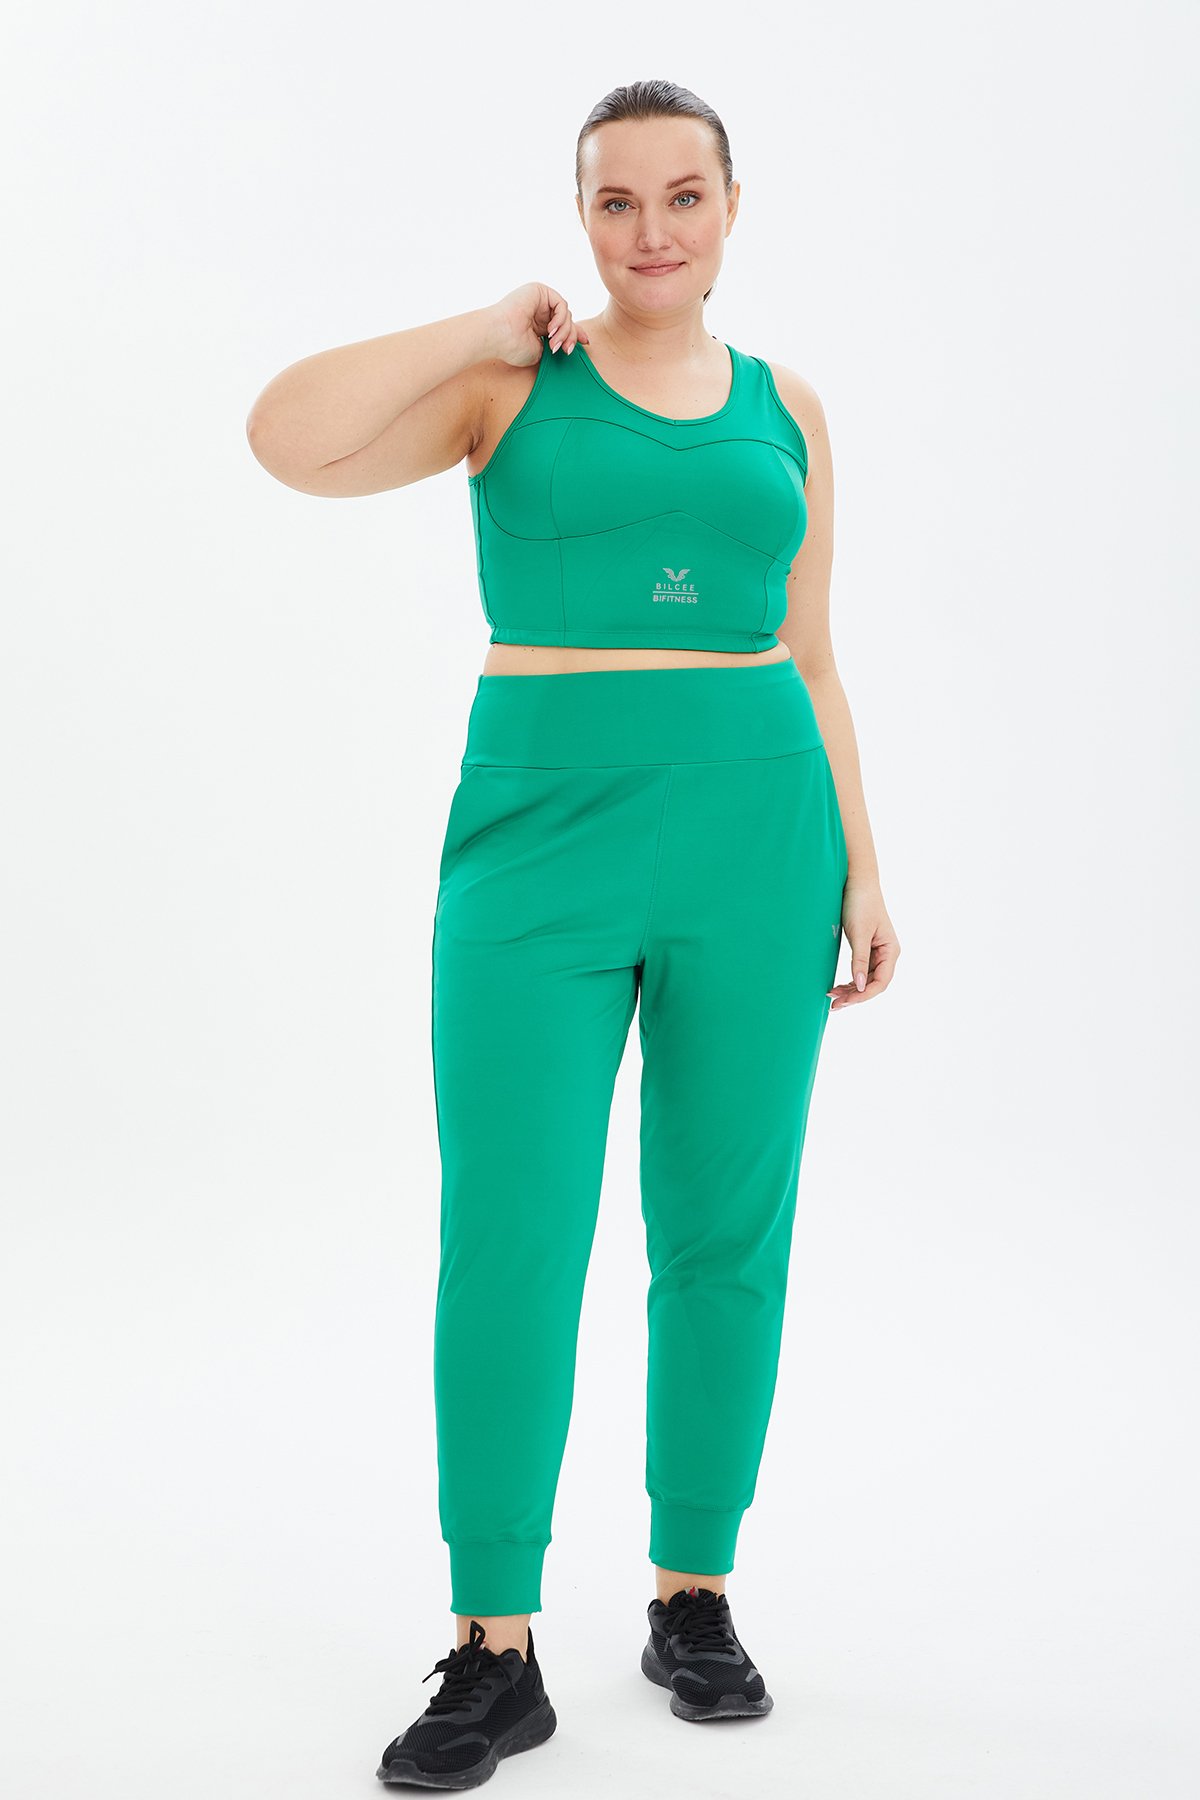 Kadın Yeşil Fitness-Antrenman Spor Fashion Crop Top Toparlayıcı Bra Sporcu Sütyeni Büstiyer 0604 - 17